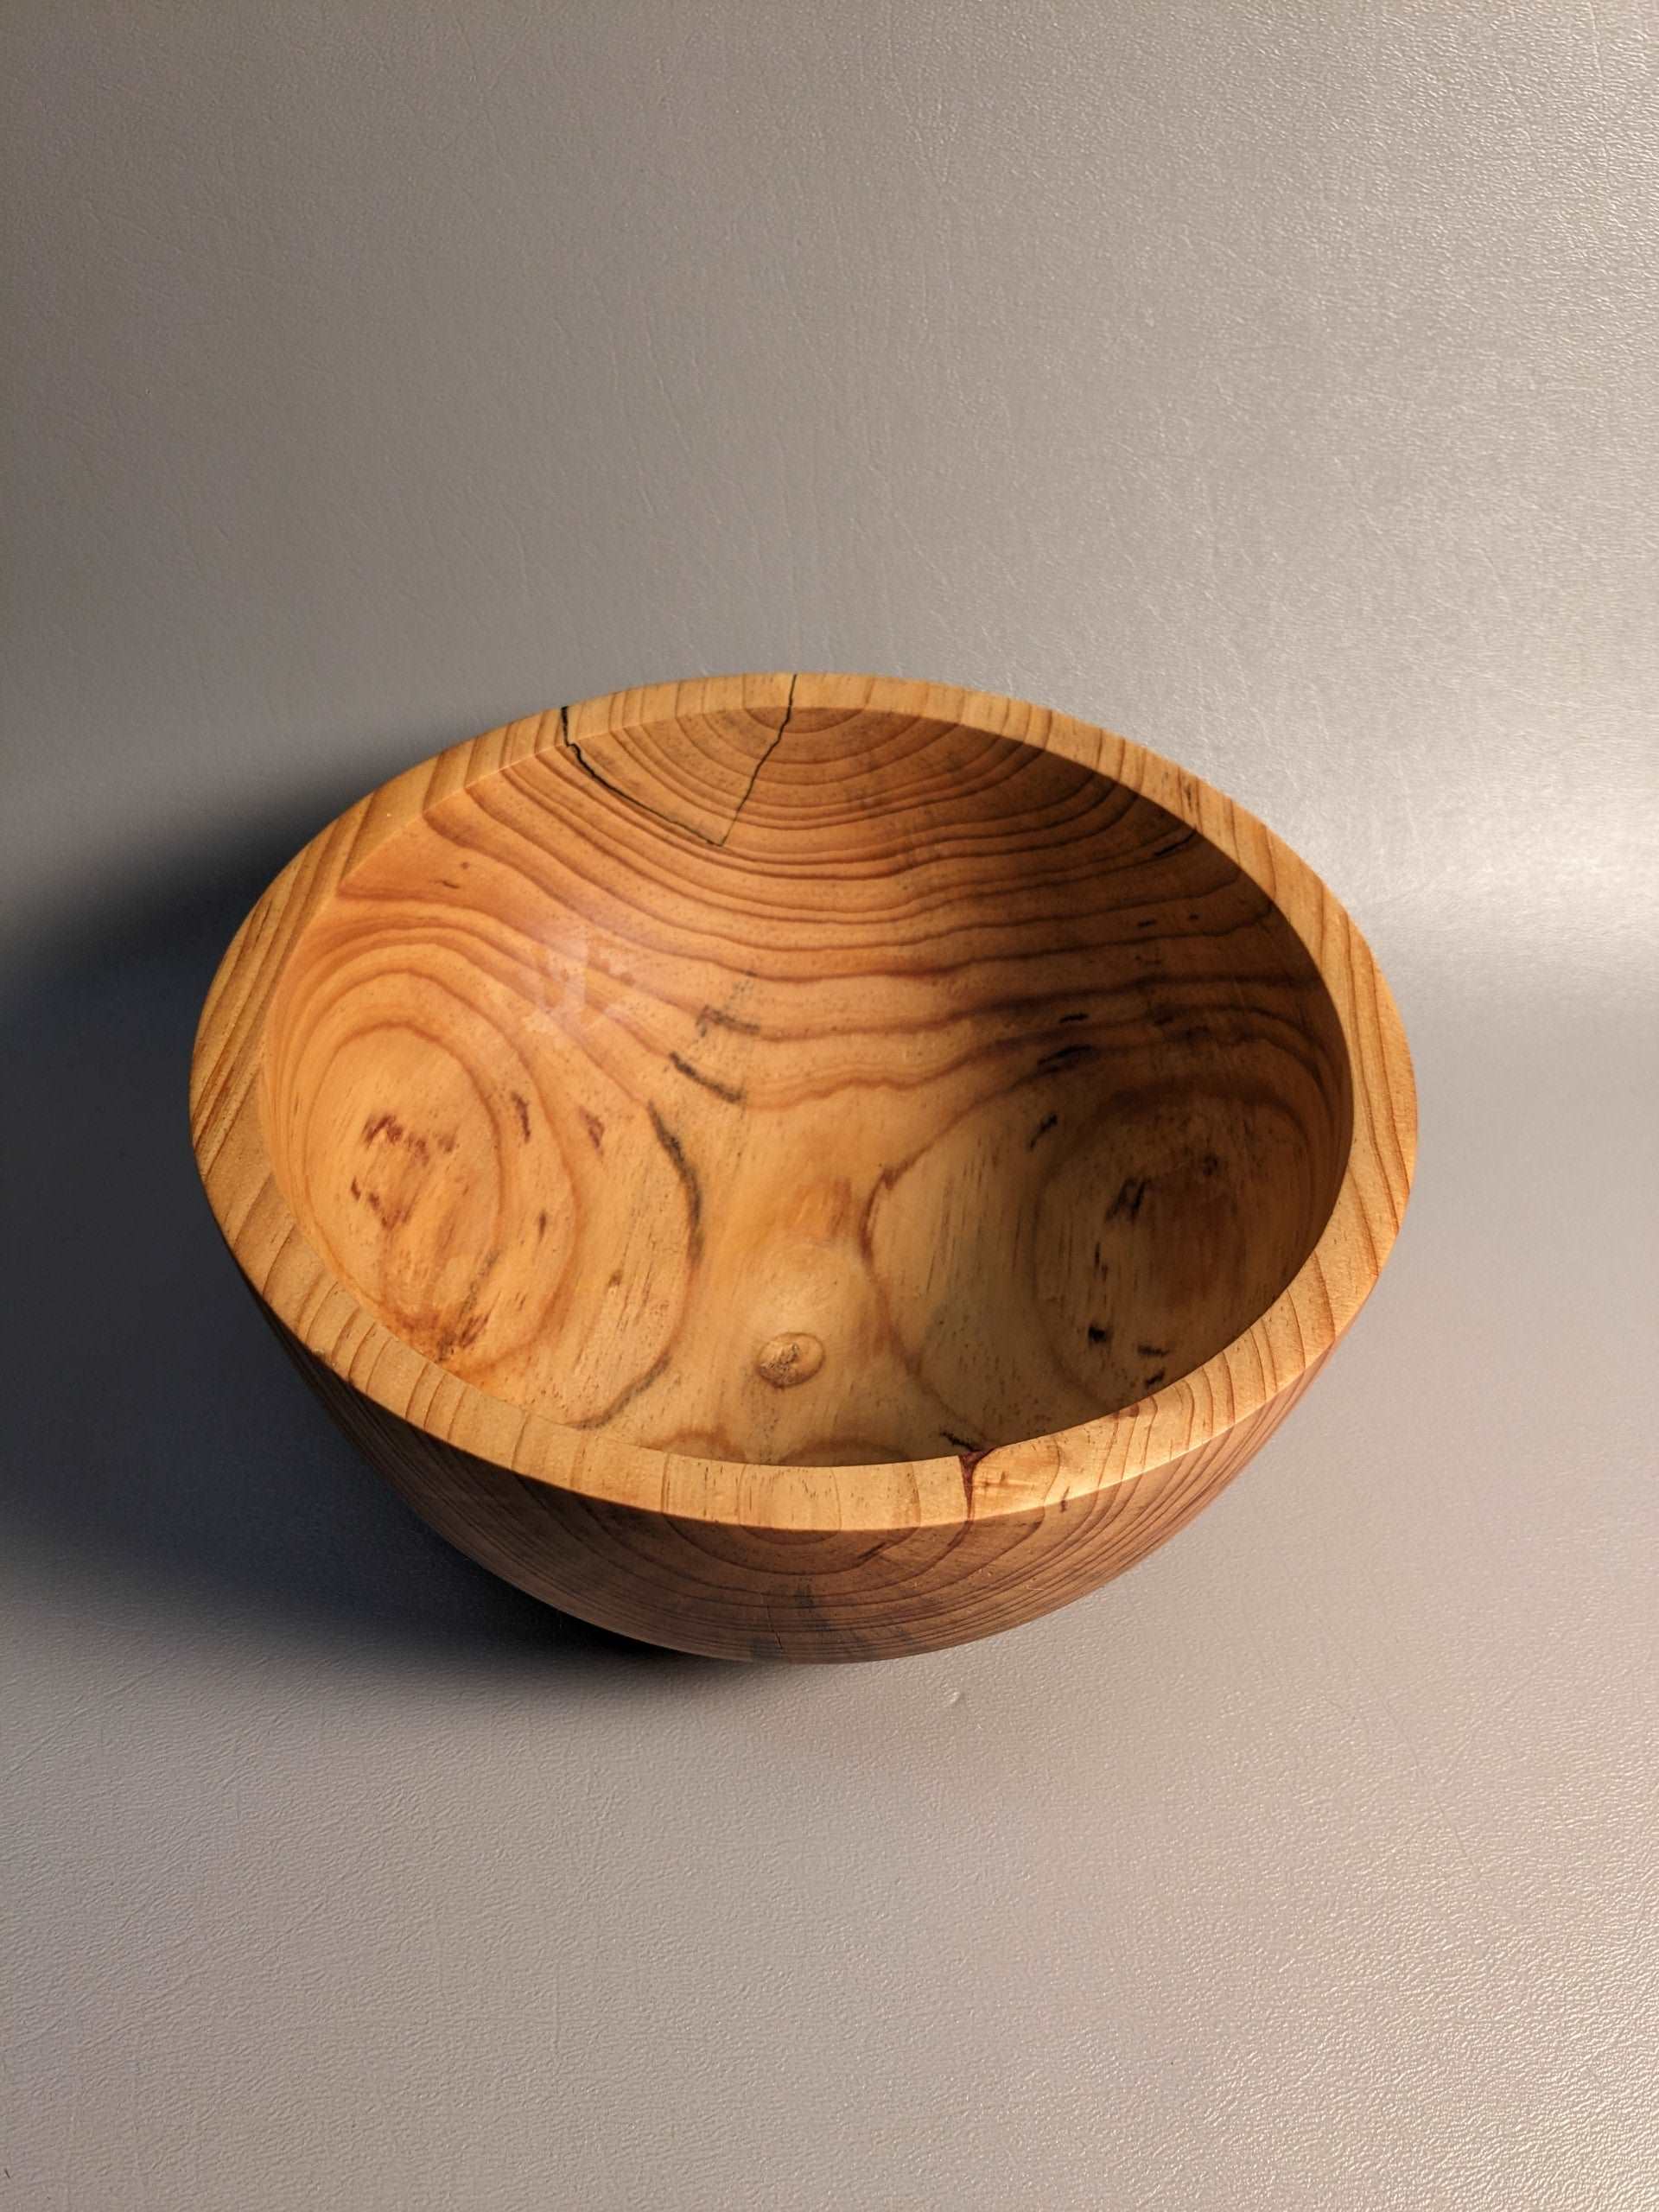 Mended Pine Bowl